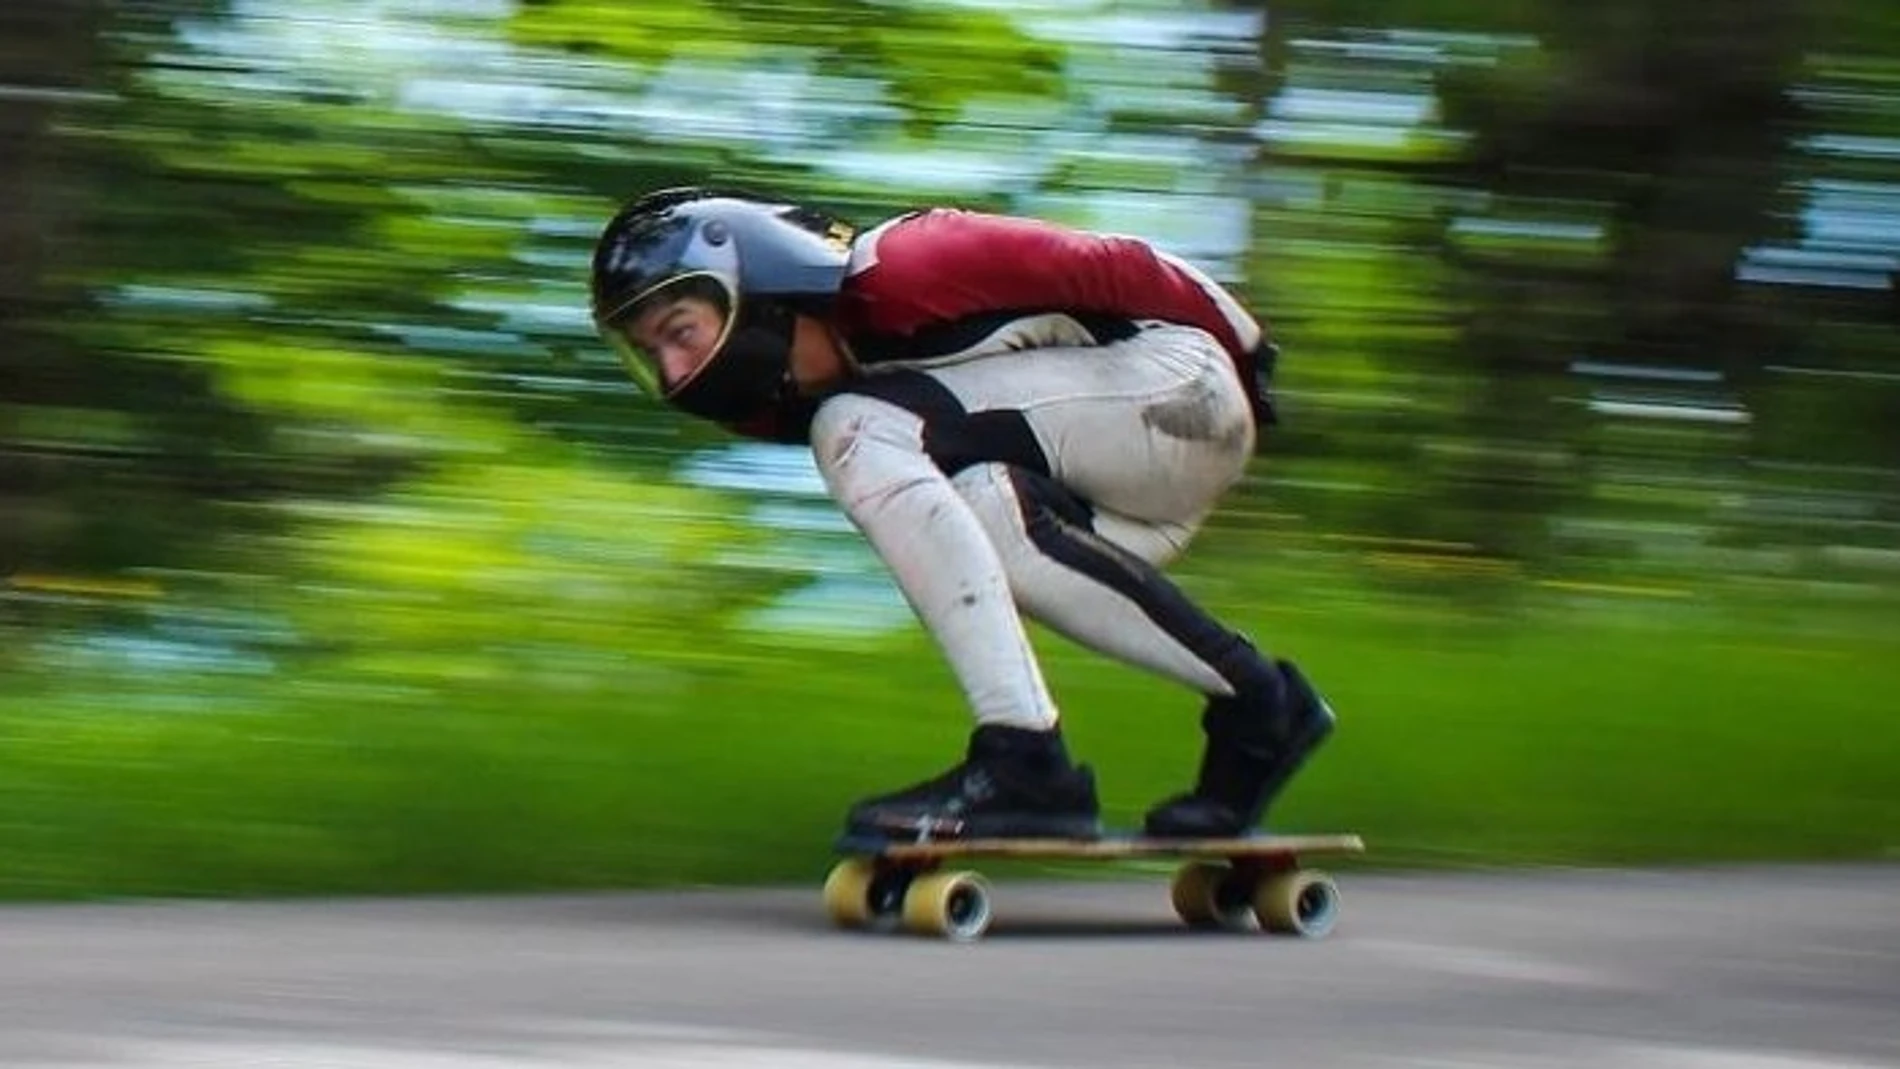 Diego Poncelet, en una bajaba sobre un skateboard